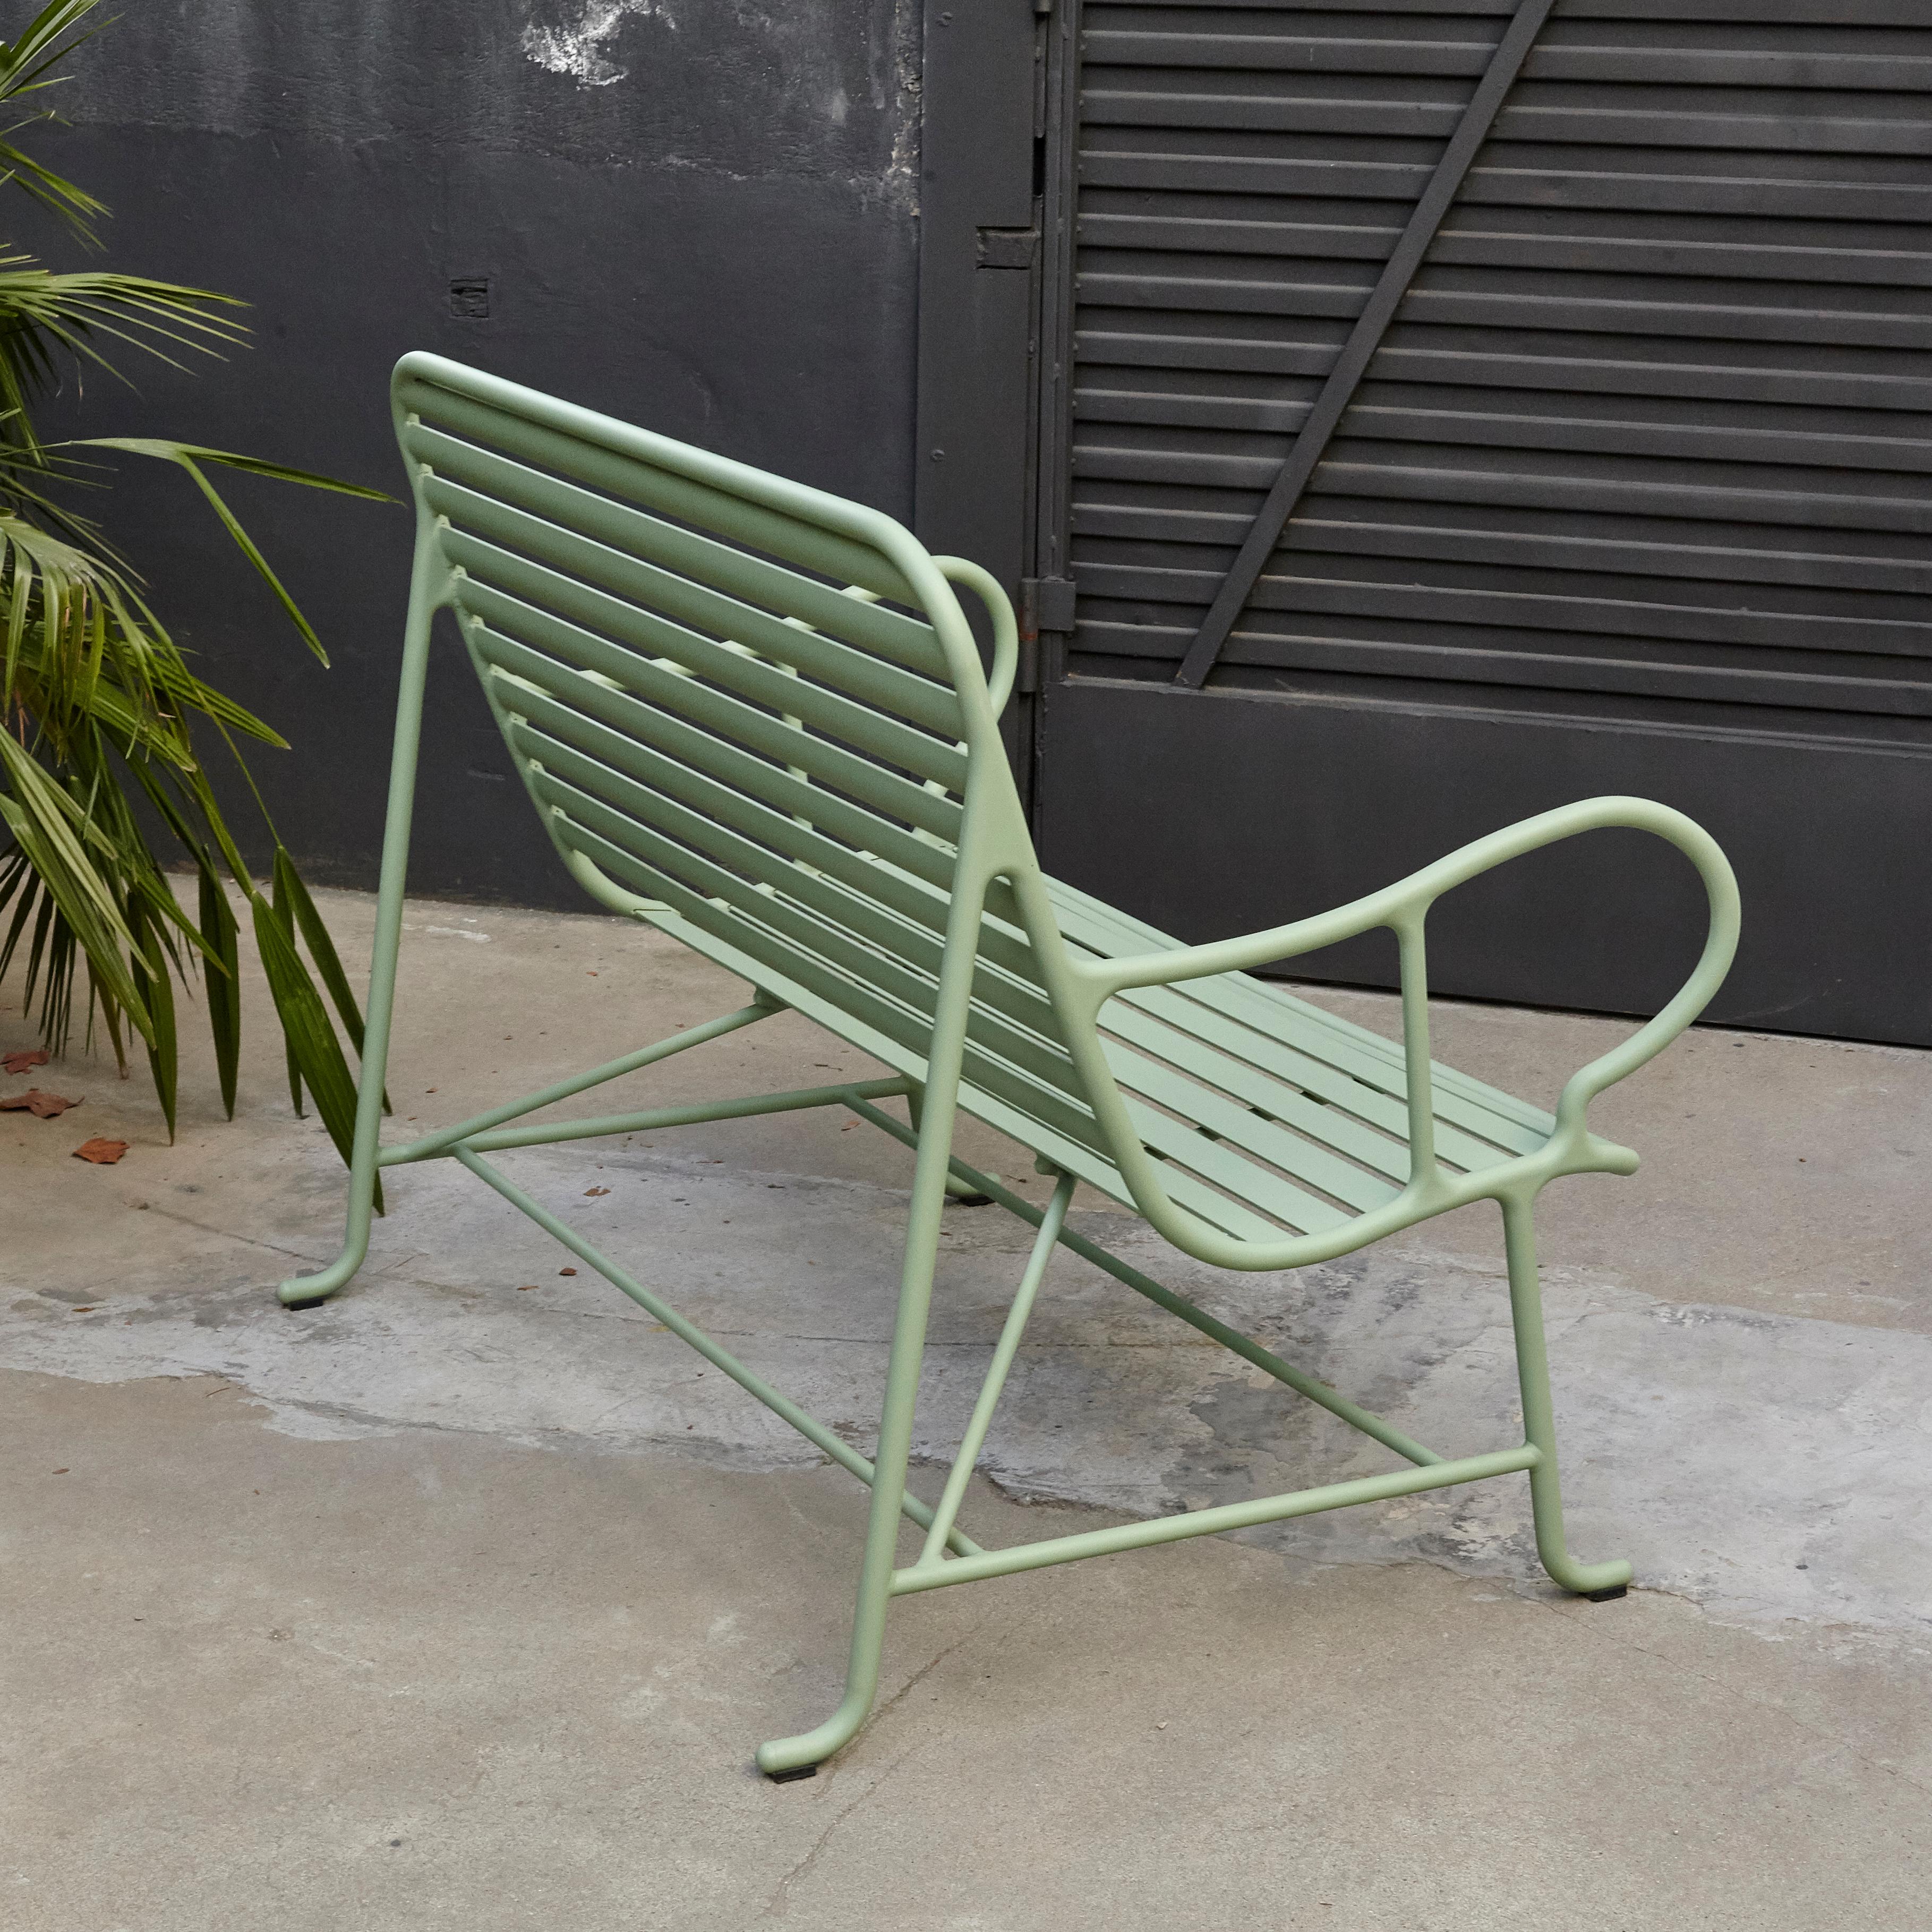 Spanish Jaime Hayon Contemporary Green Sculptural 'Gardenias' Outdoor Bench for BD